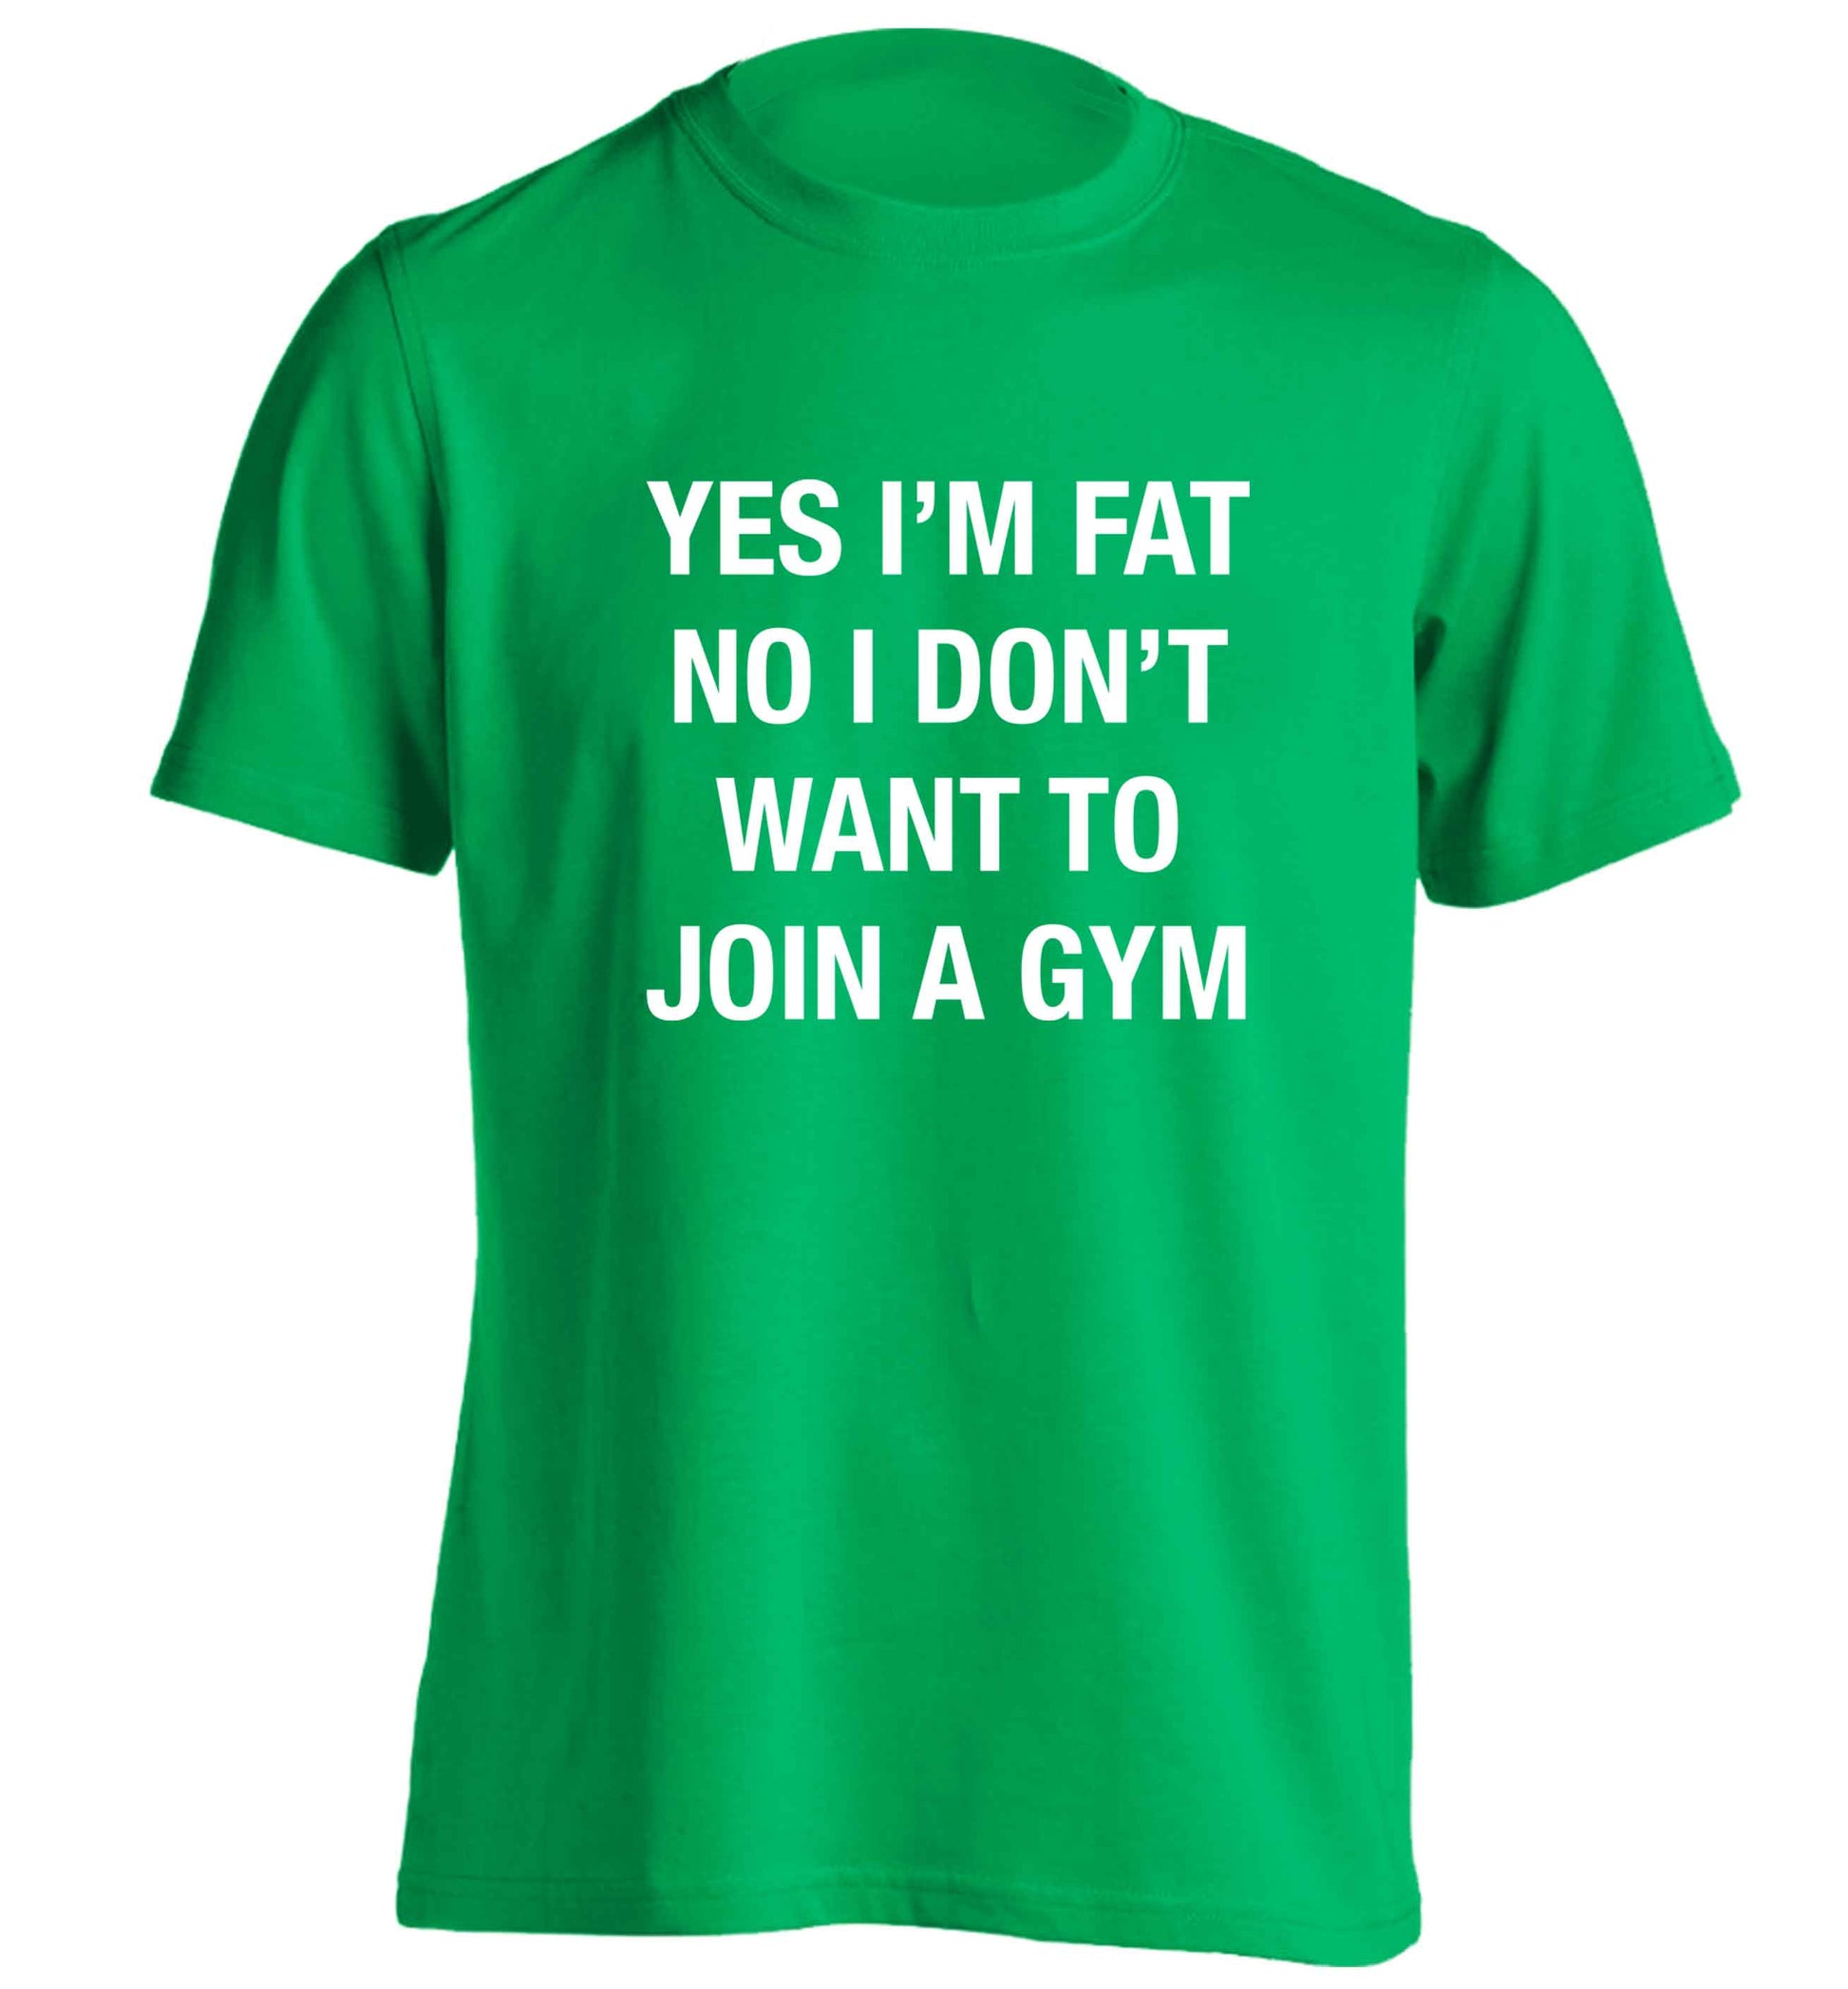 Yes I'm fat, no I don't want to go to the gym adults unisex green Tshirt 2XL